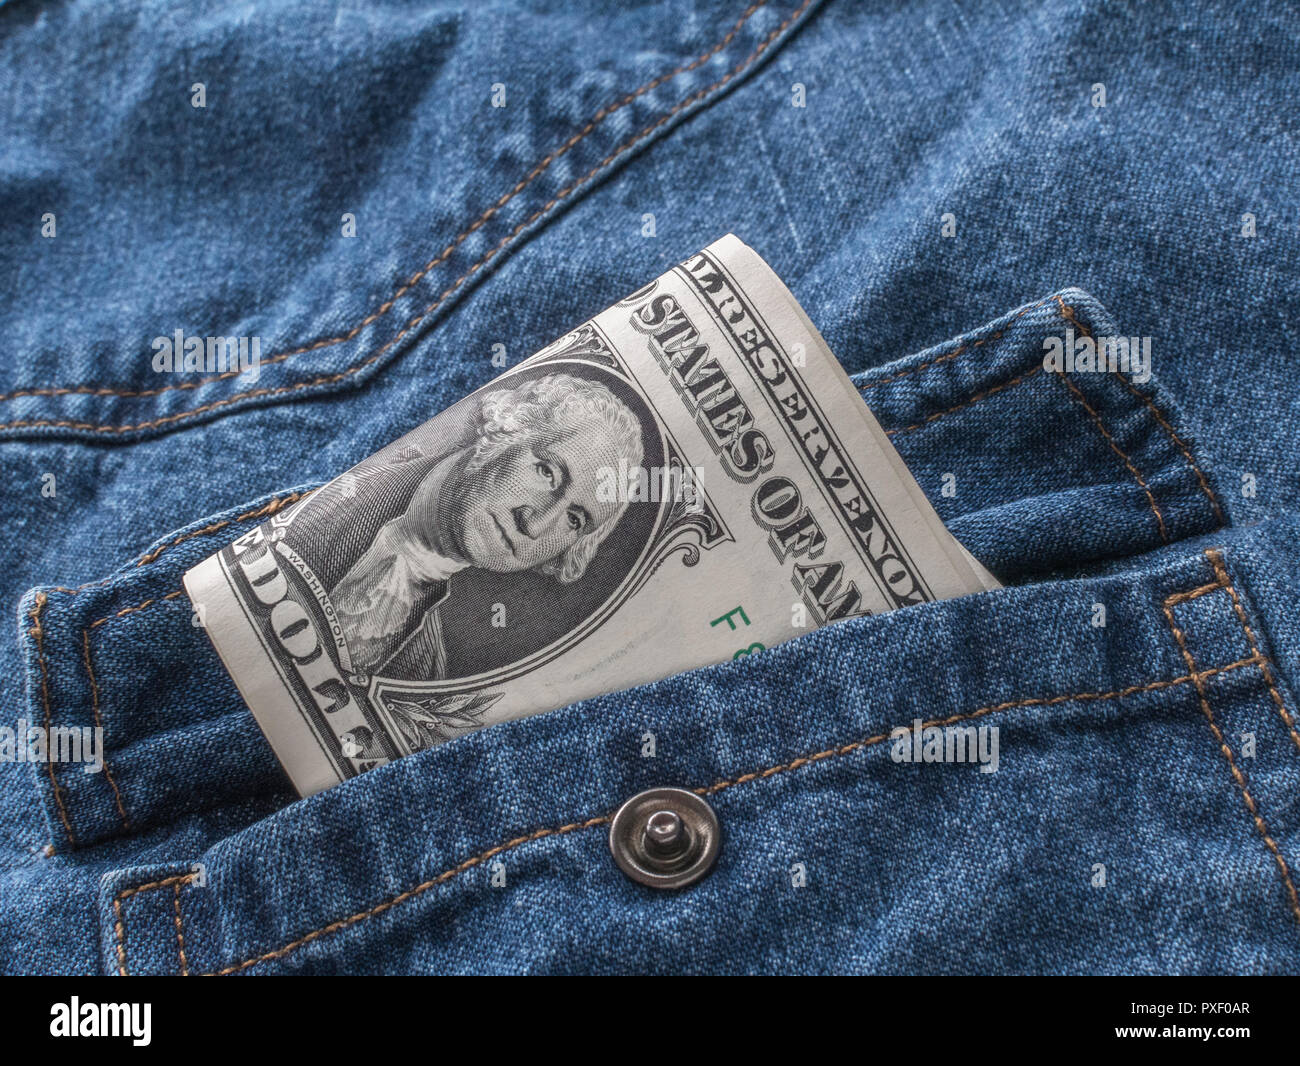 US / American 1 Dollar bills in pocket - metaphor for 'Money in Your Pocket', U.S. earnings, Biden economy. US banking crisis metaphor. Stock Photo